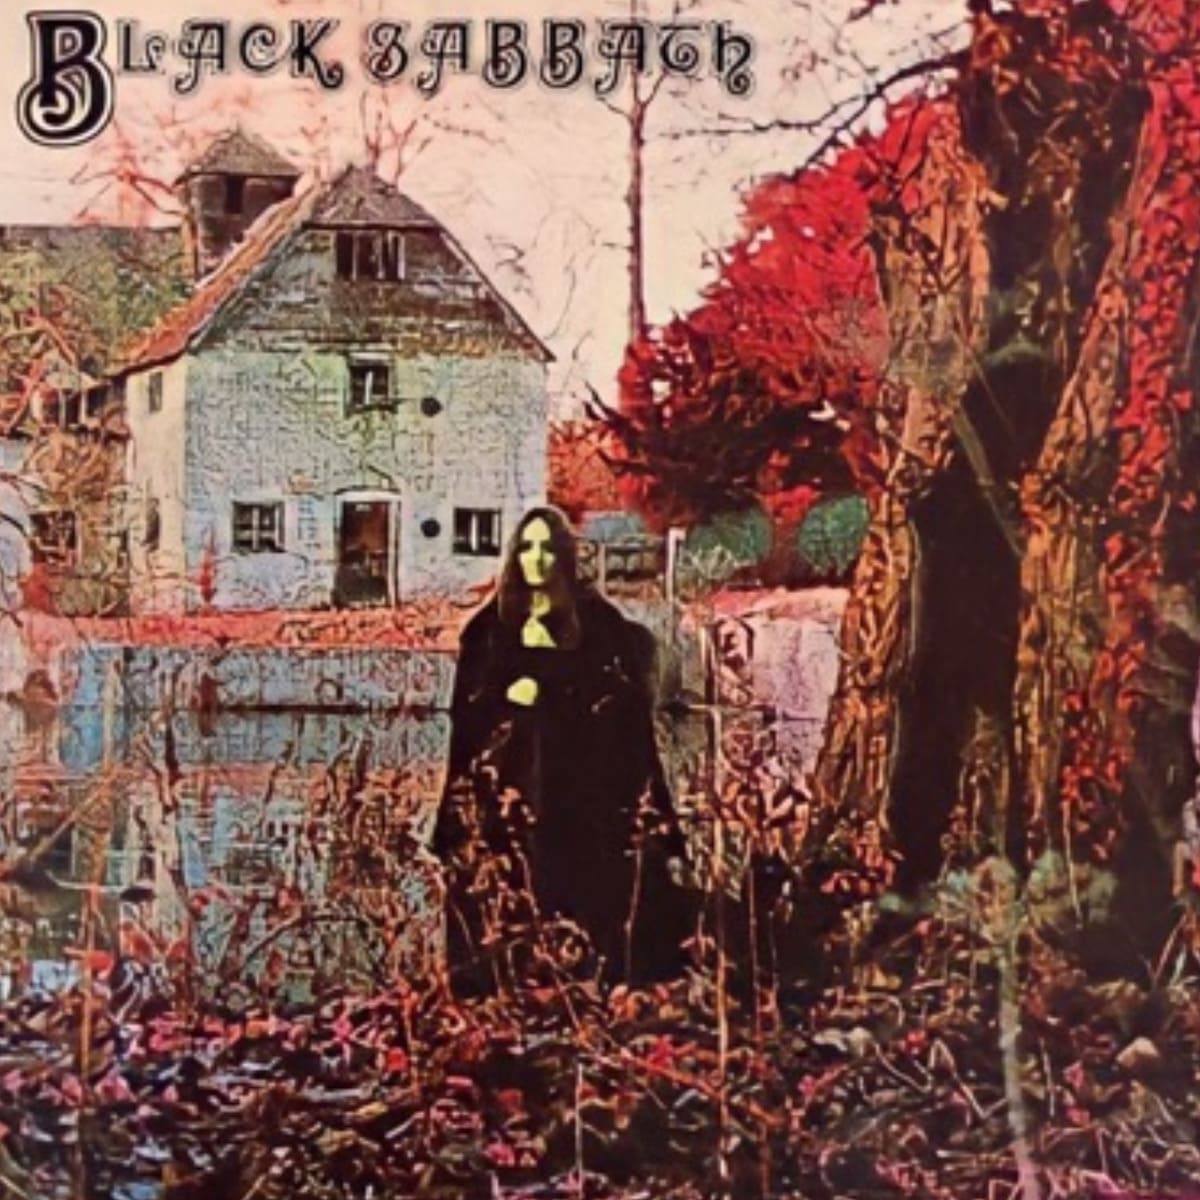 Black Sabbath" album cover by the band Black Sabbath